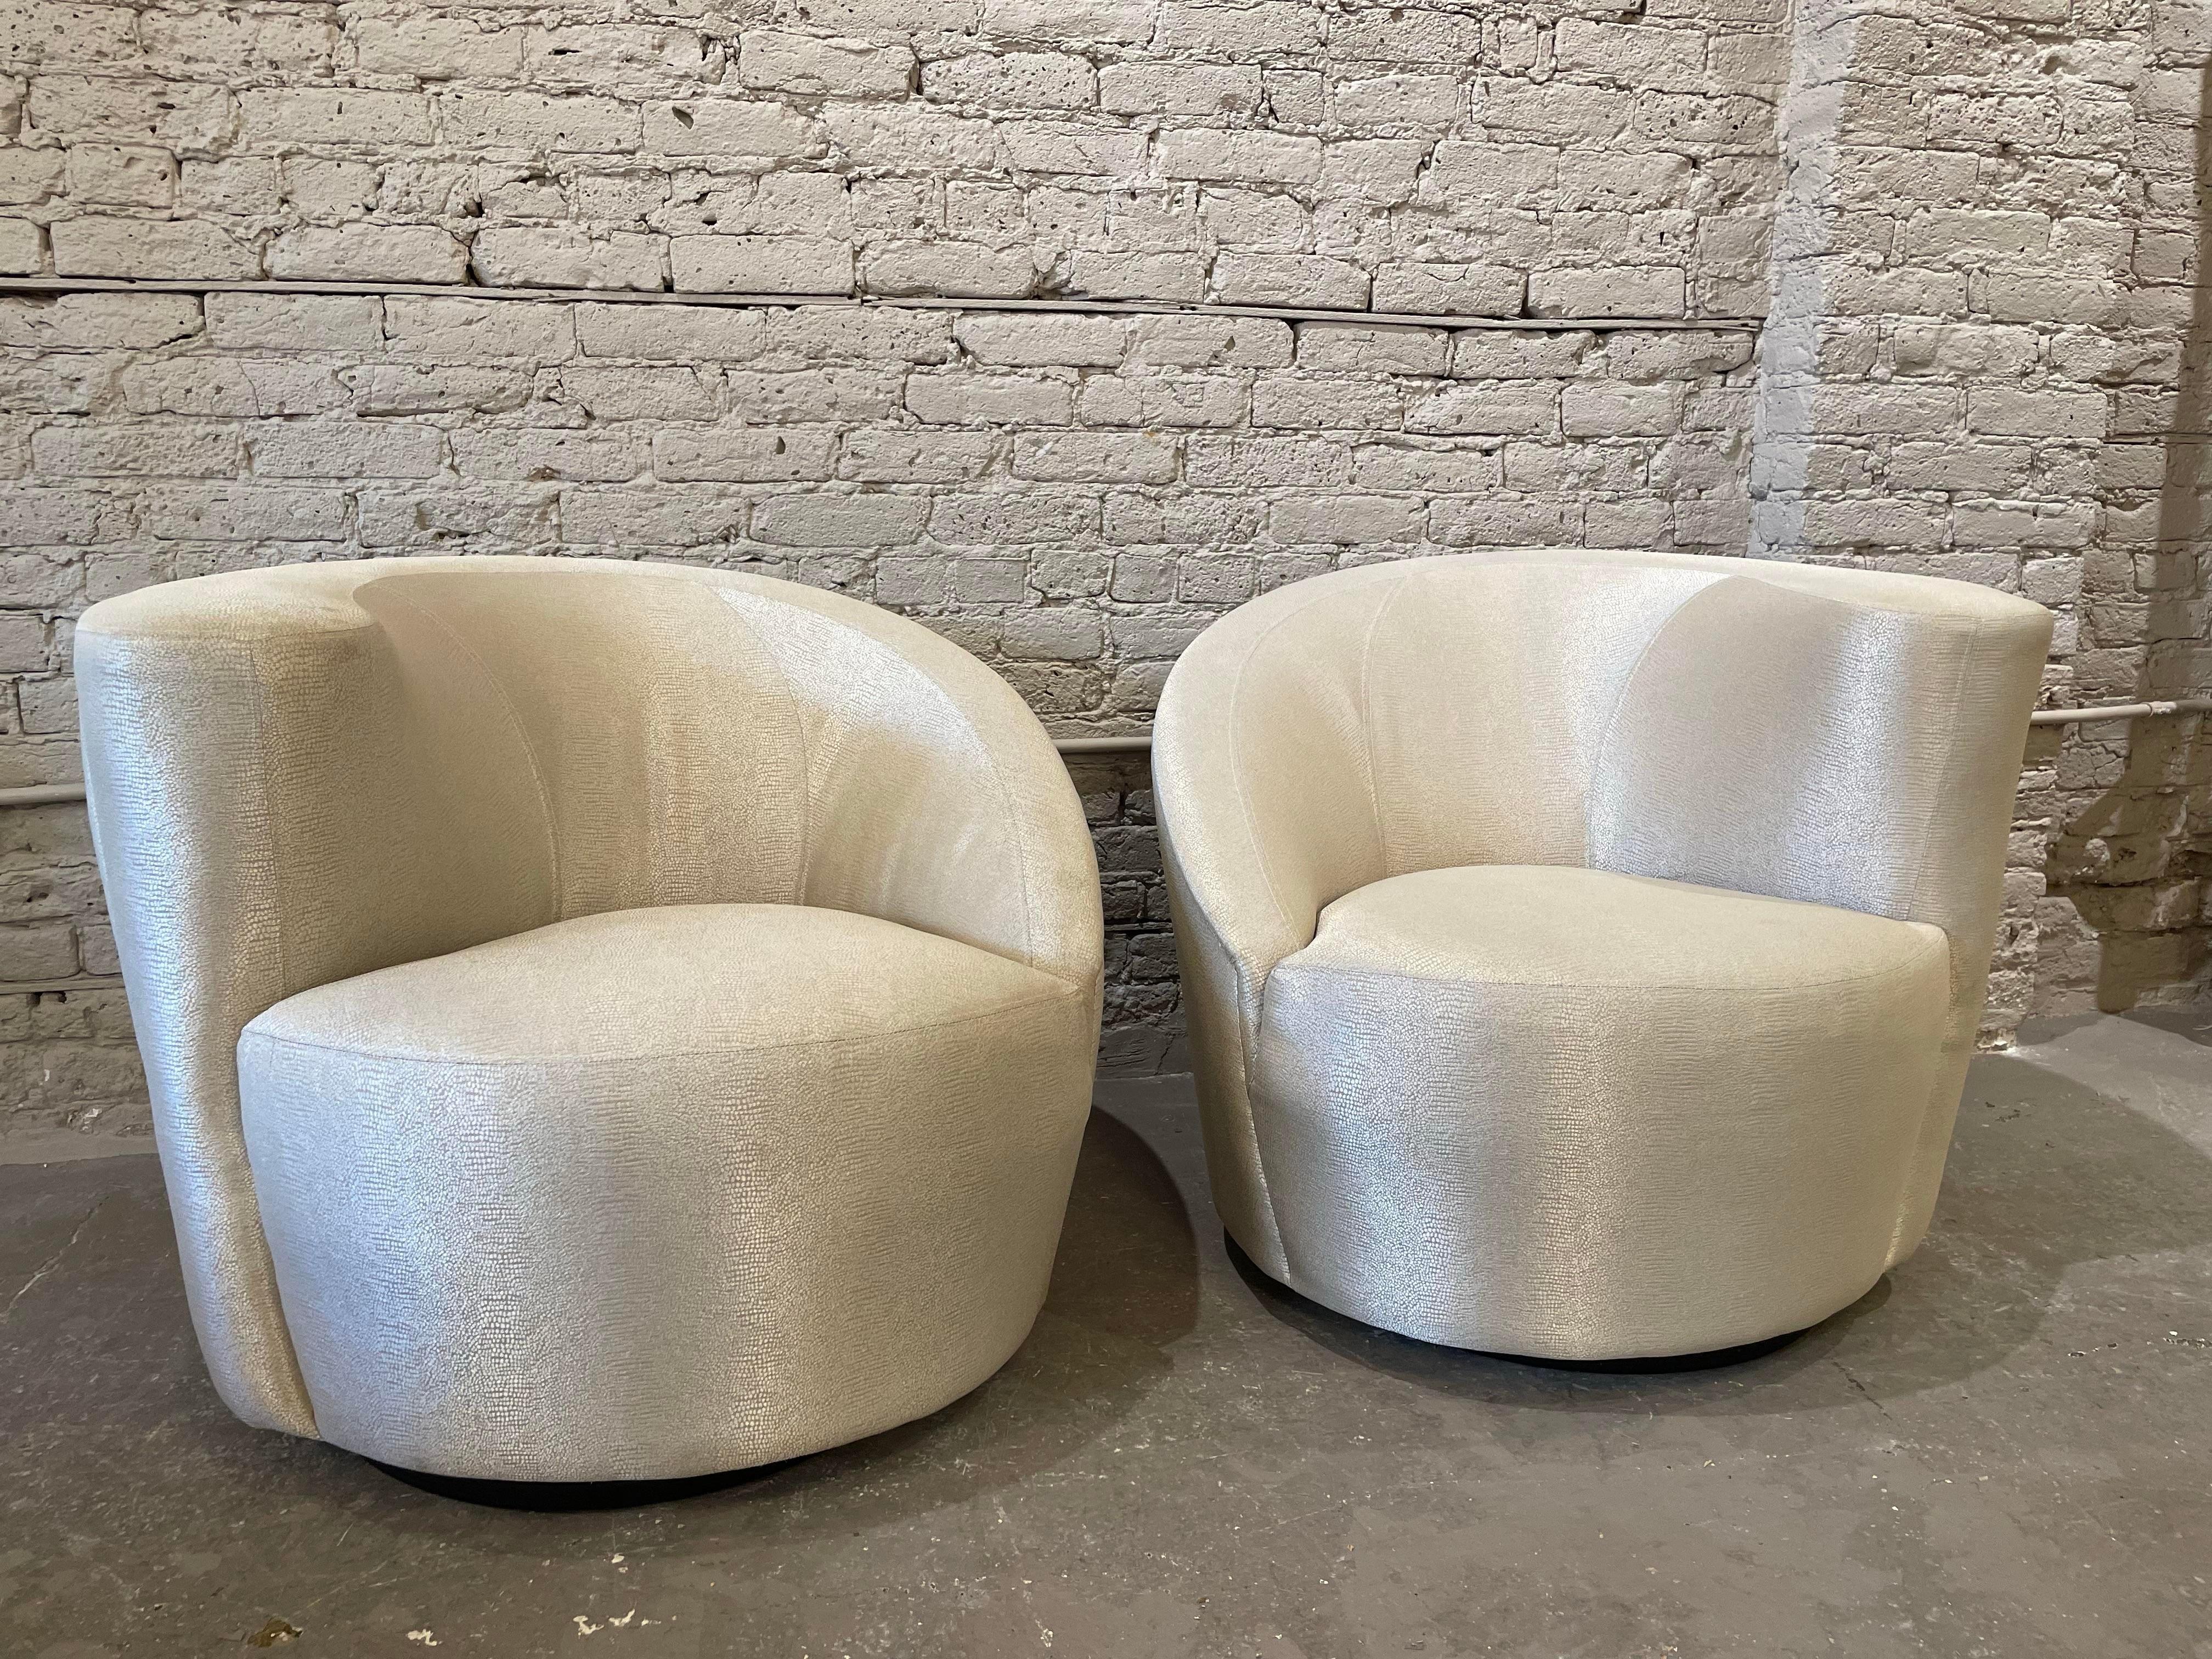 Dieses Paar Nautilus-Stühle ist ein Beispiel für die verblüffenden organischen futuristischen Formen und klaren Linien, für die Vladimir Kagan, einer der angesehensten Möbeldesigner des 20. Jahrhunderts, gefeiert wird. Die Form der Stühle erinnert